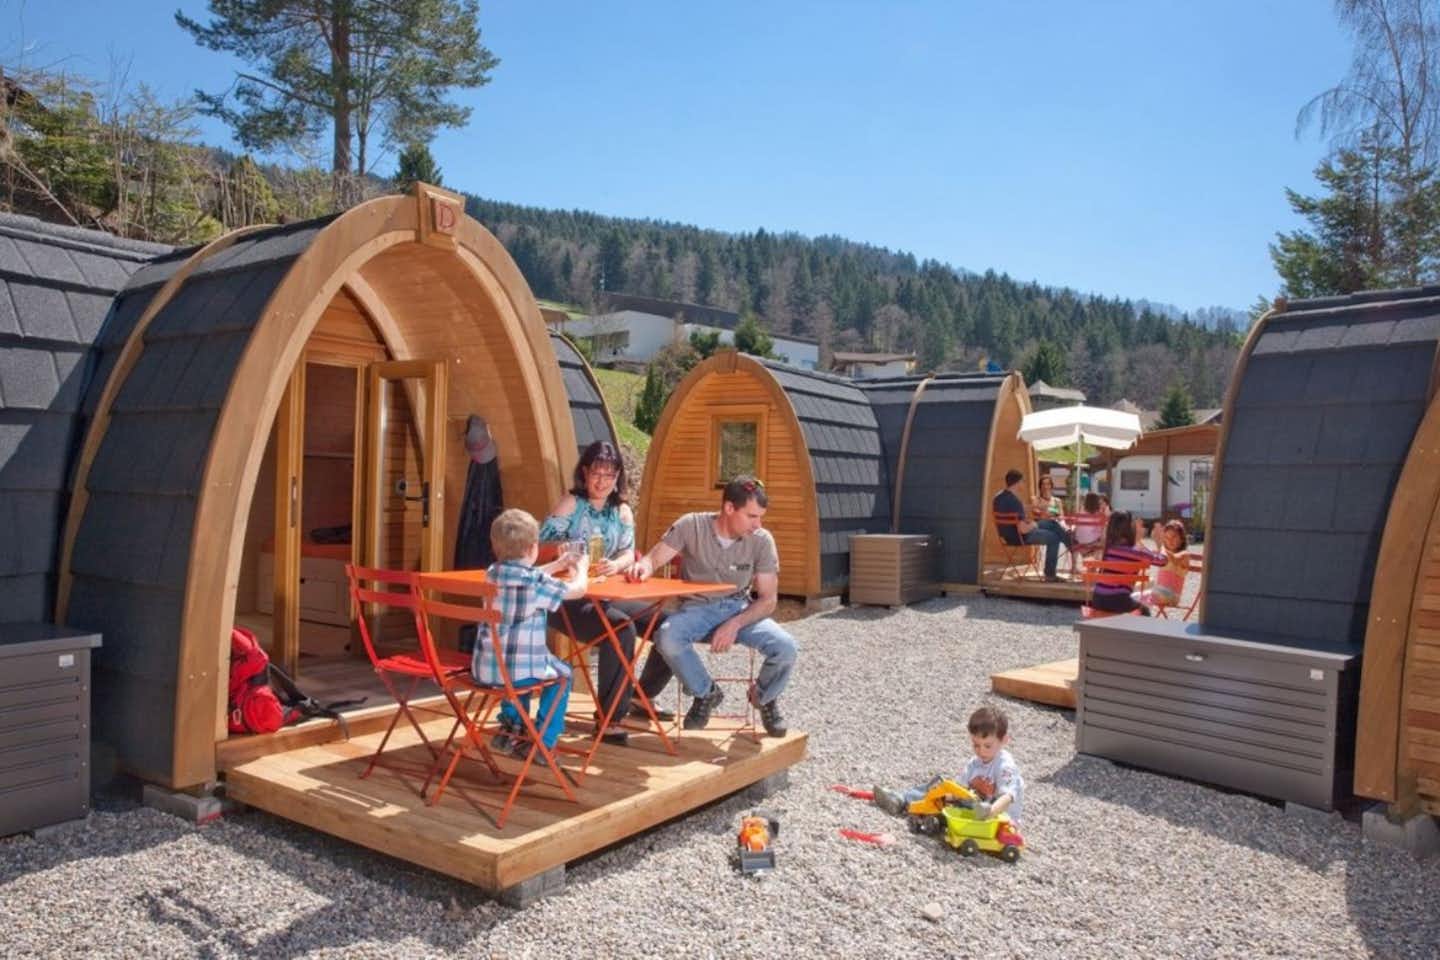 Camping Atzmännig - Glamping Pods auf dem Campingplatz mit Familien davor